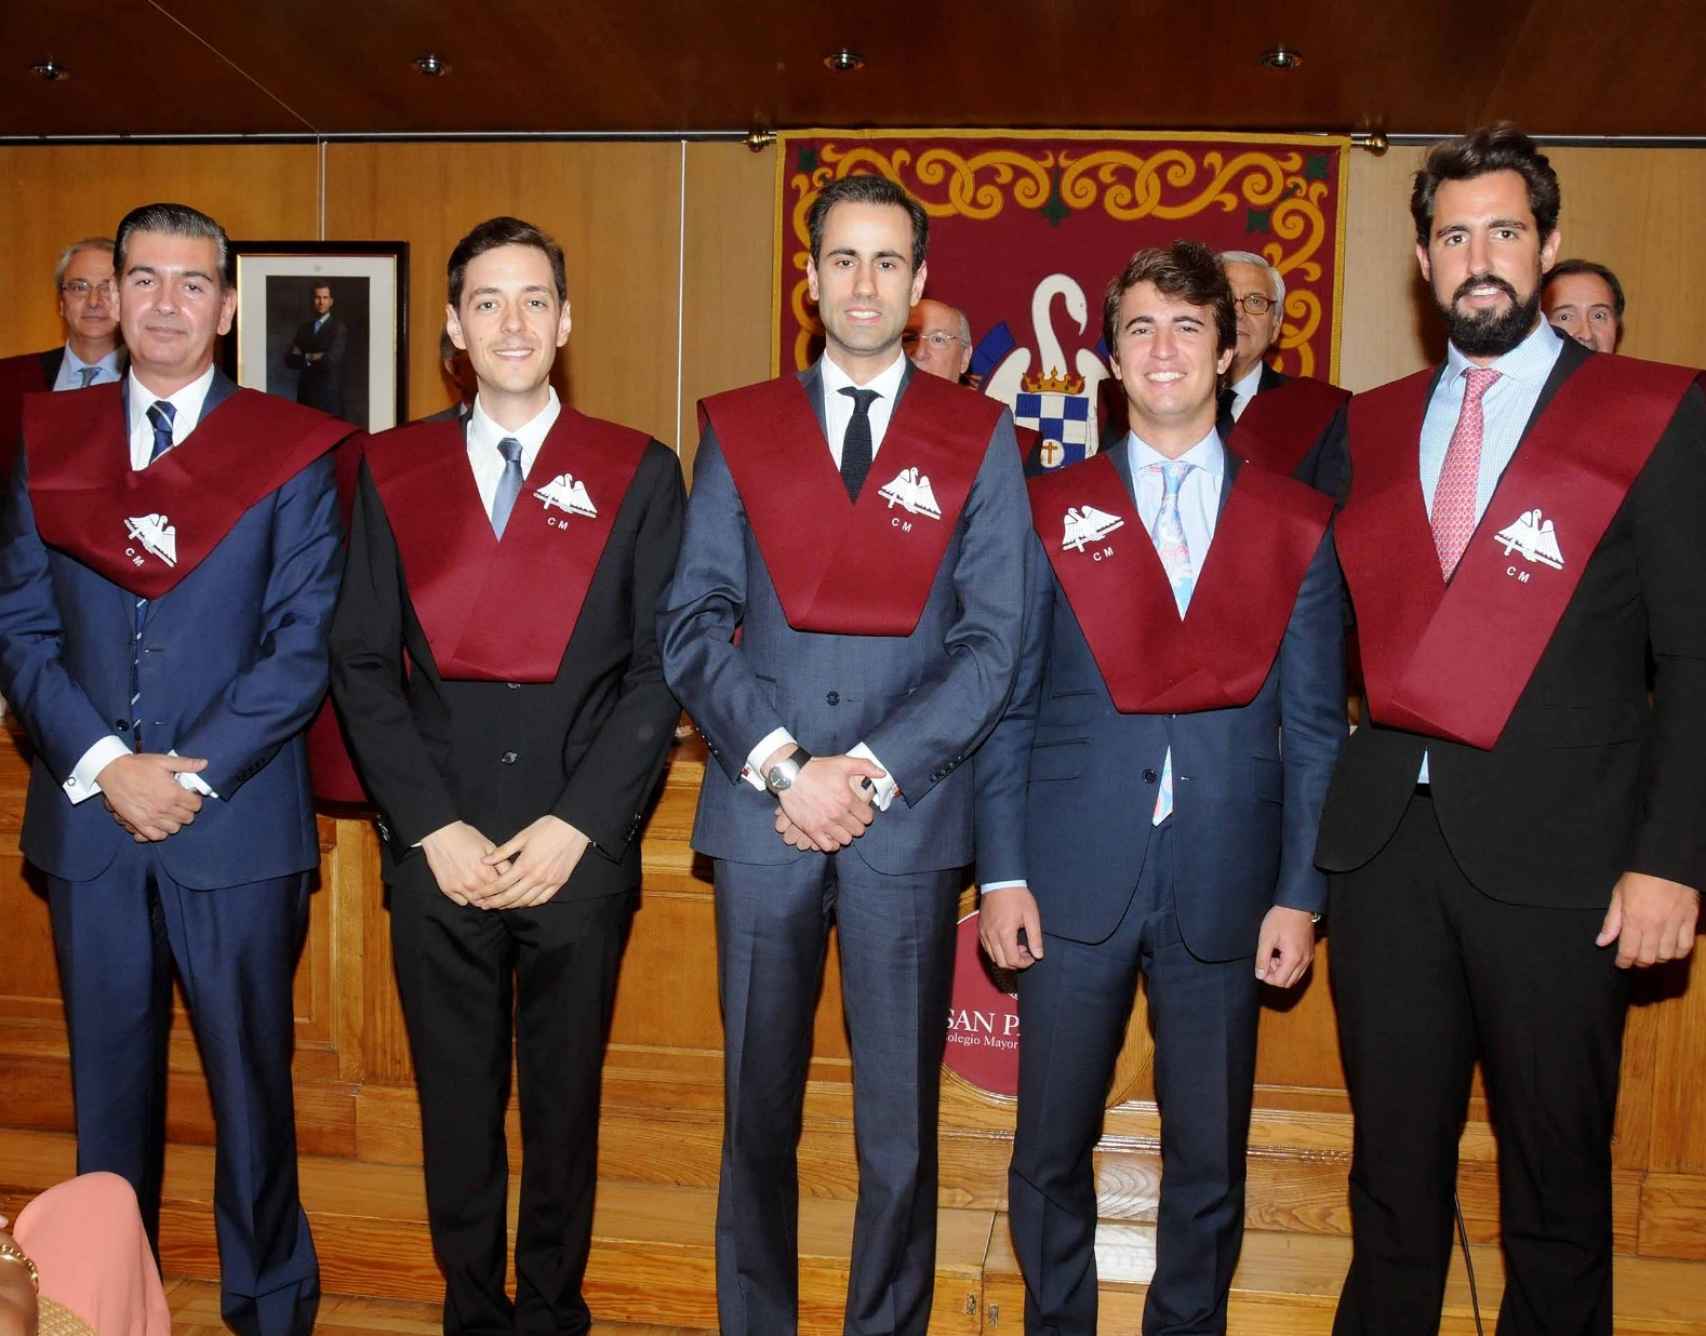 El candidato de Vox a presidente de Castilla y León (primero por la derecha) cuando fue homenajeado por su colegio mayor.